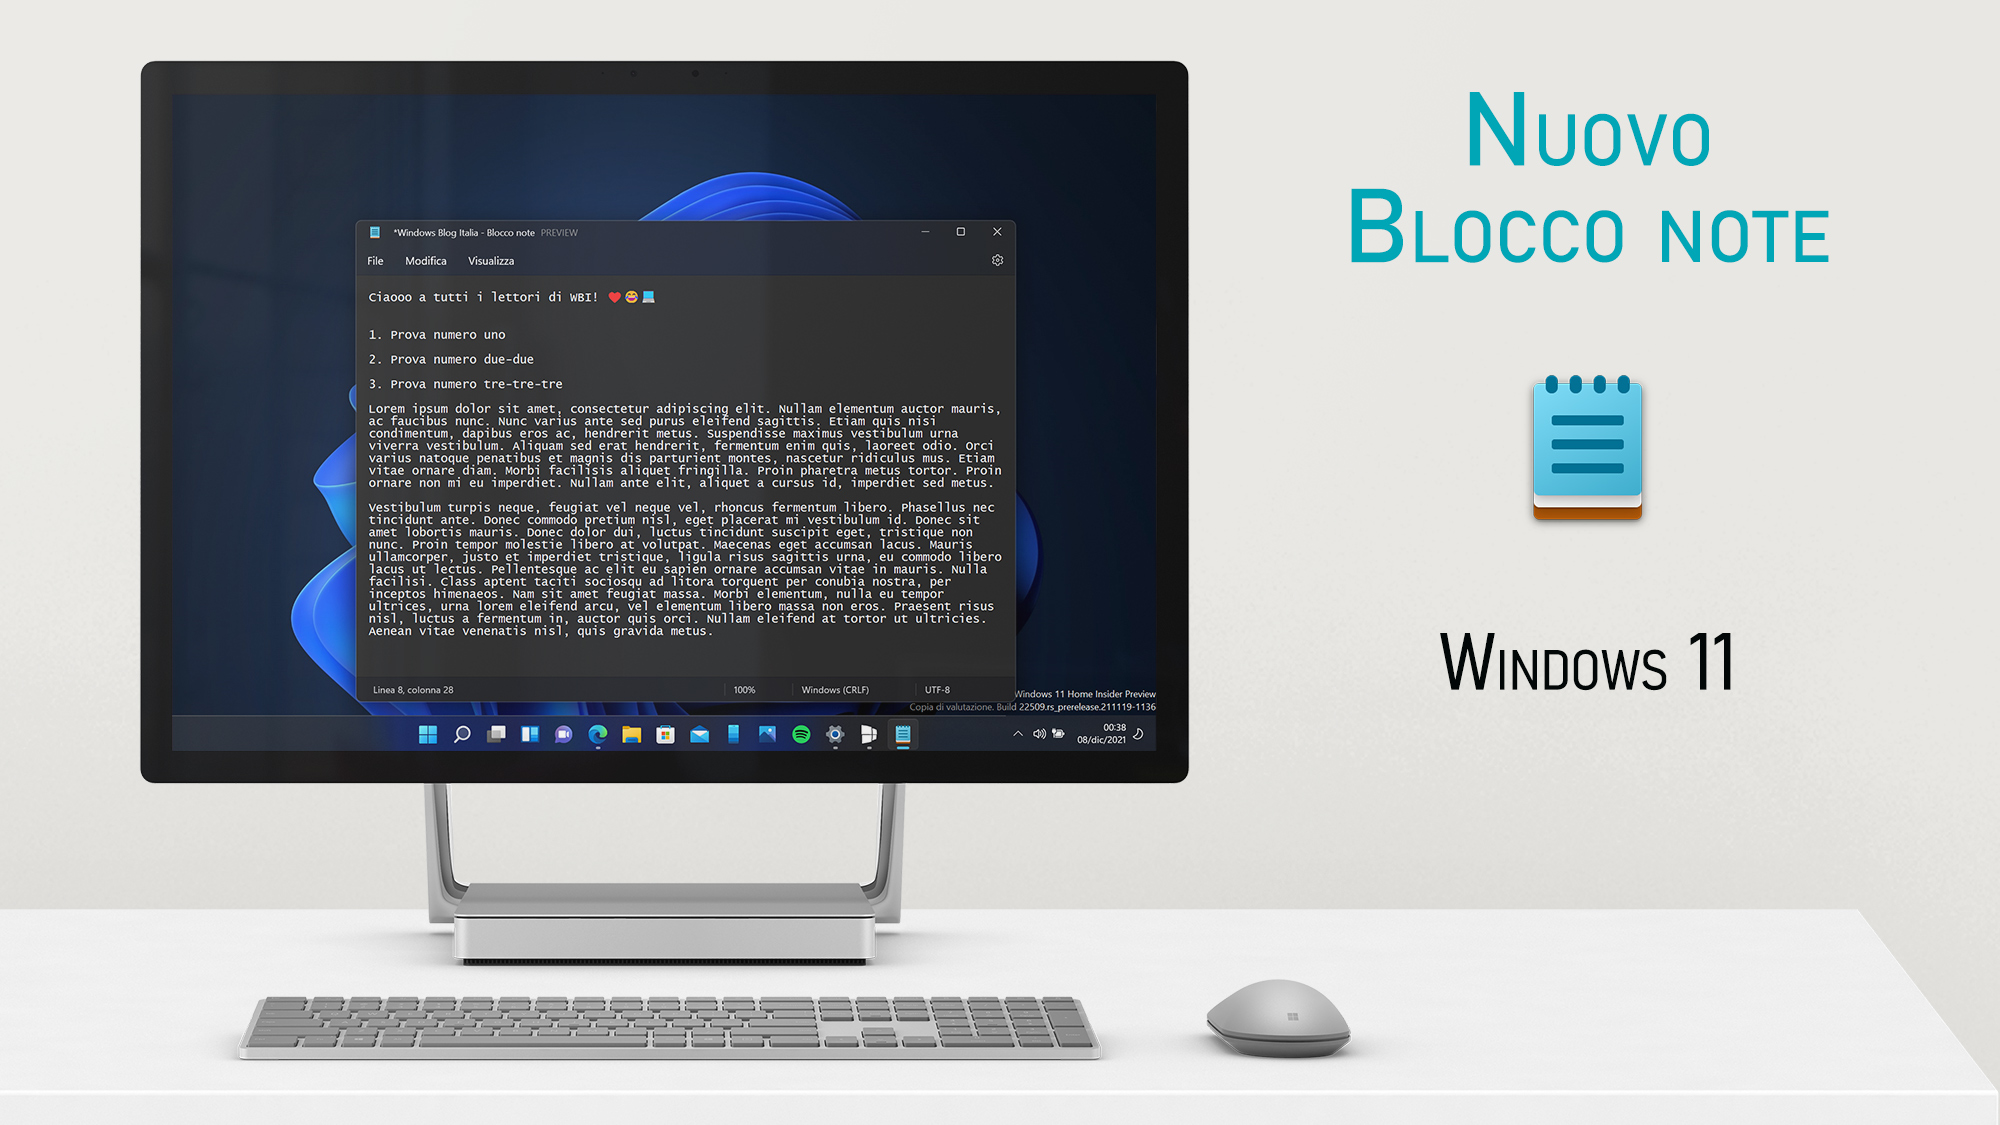 Windows 11 - Nuovo Blocco note